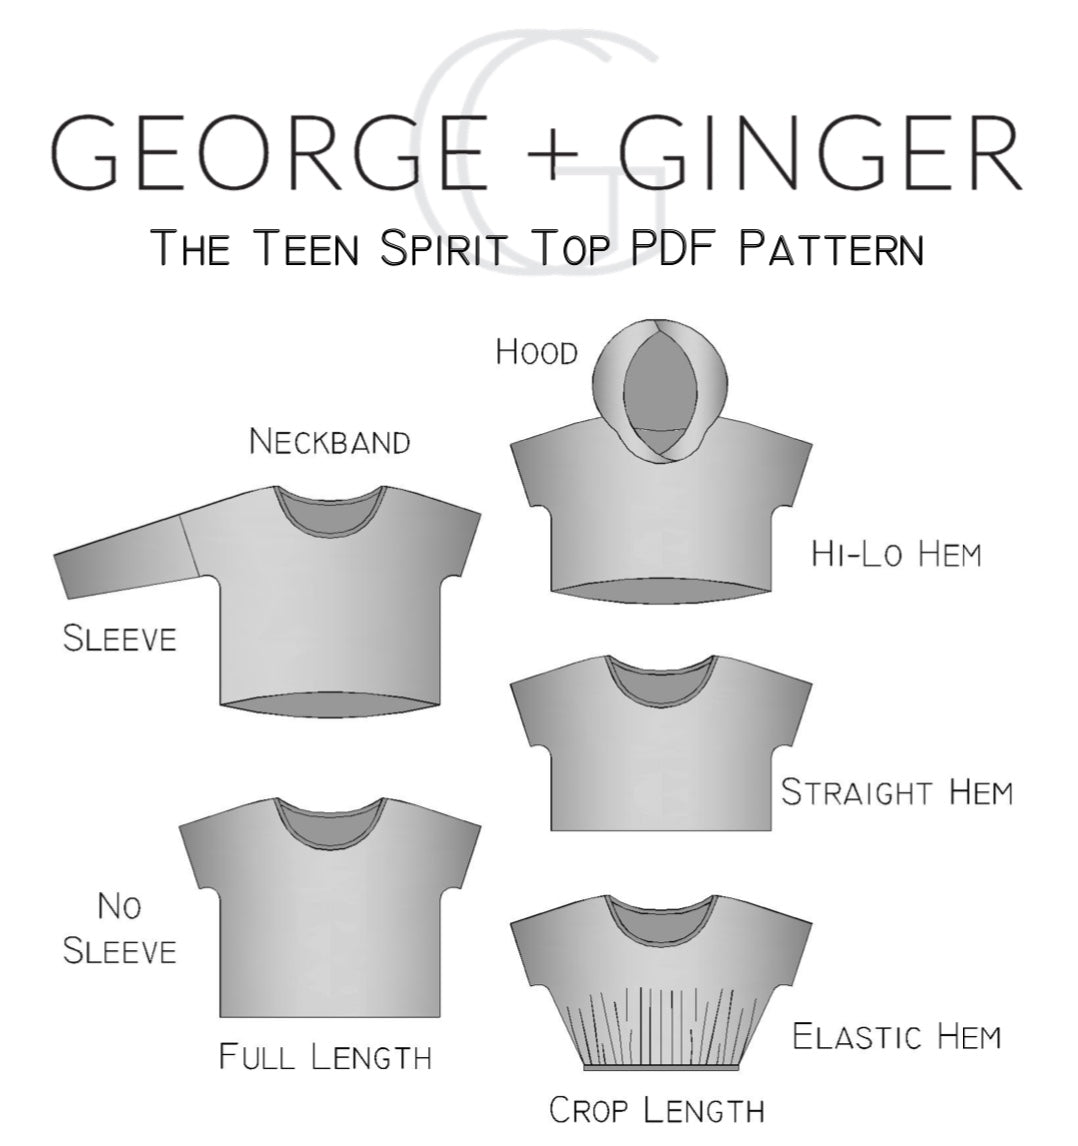 Basic Grunge Mini Set PDF Sewing Pattern